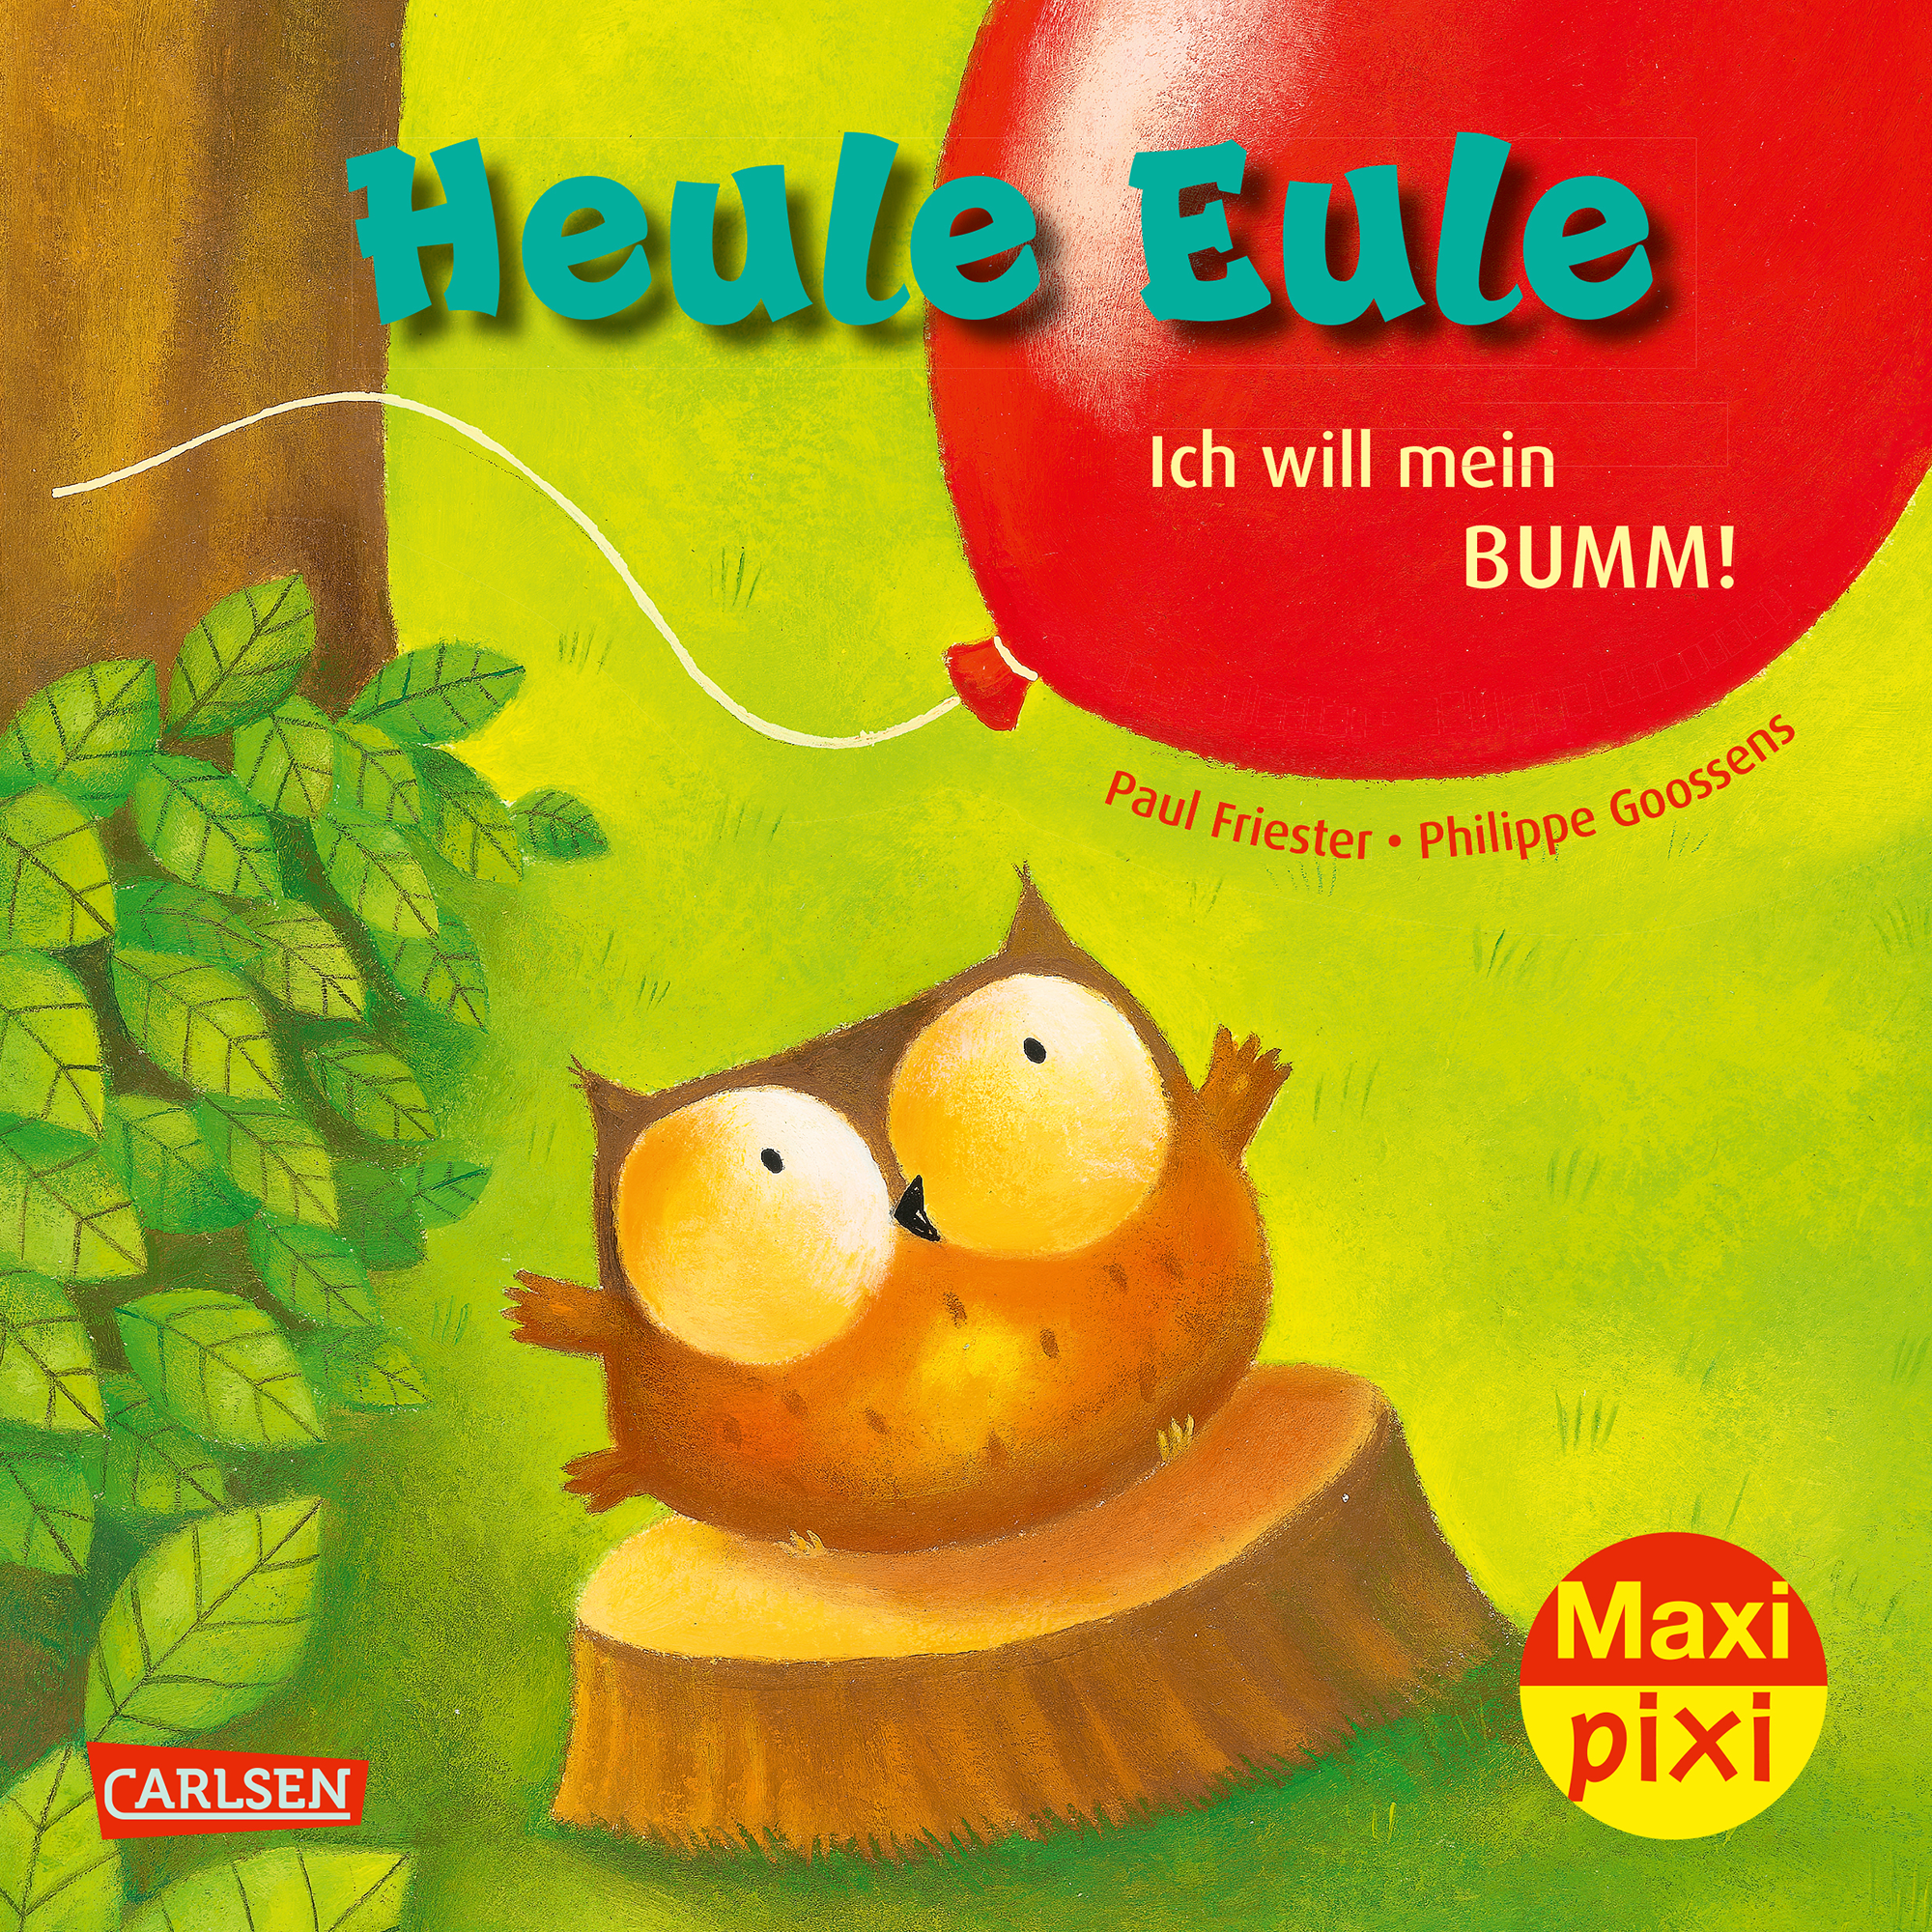 Maxi Pixi 414: Heule Eule – Ich will mein Bumm! CARLSEN 2000585068905 1